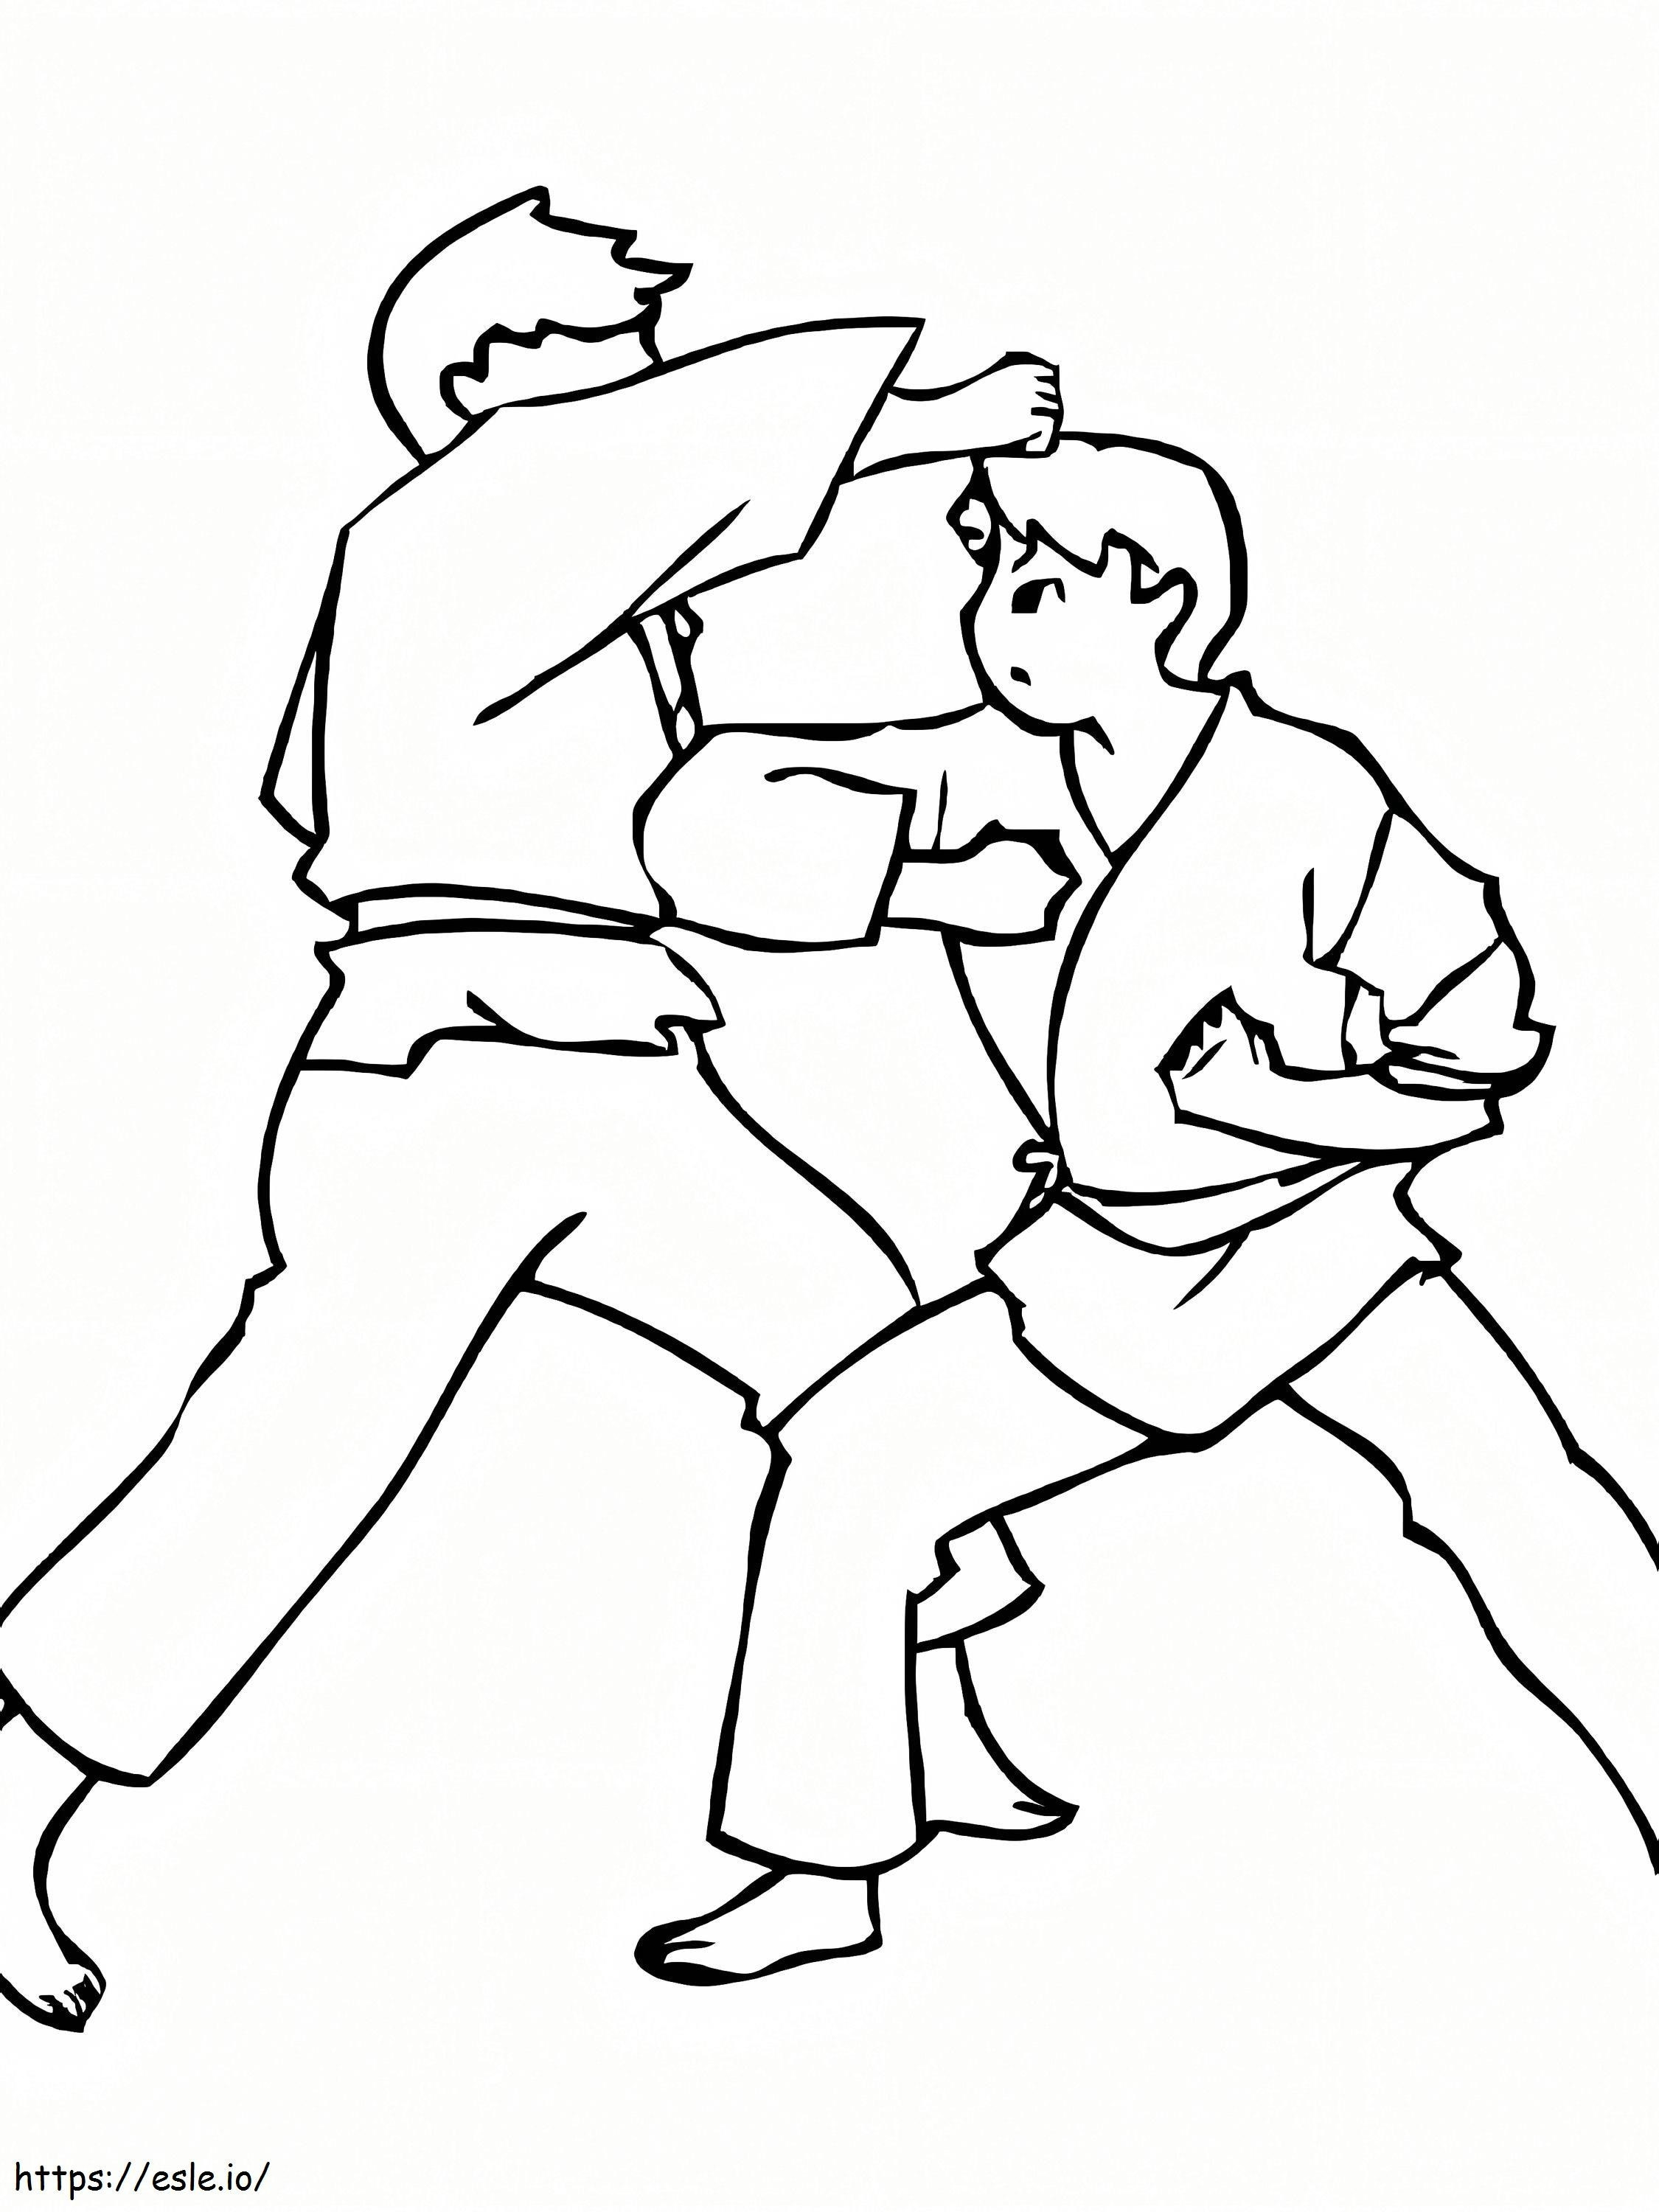 Karategevecht kleurplaat kleurplaat